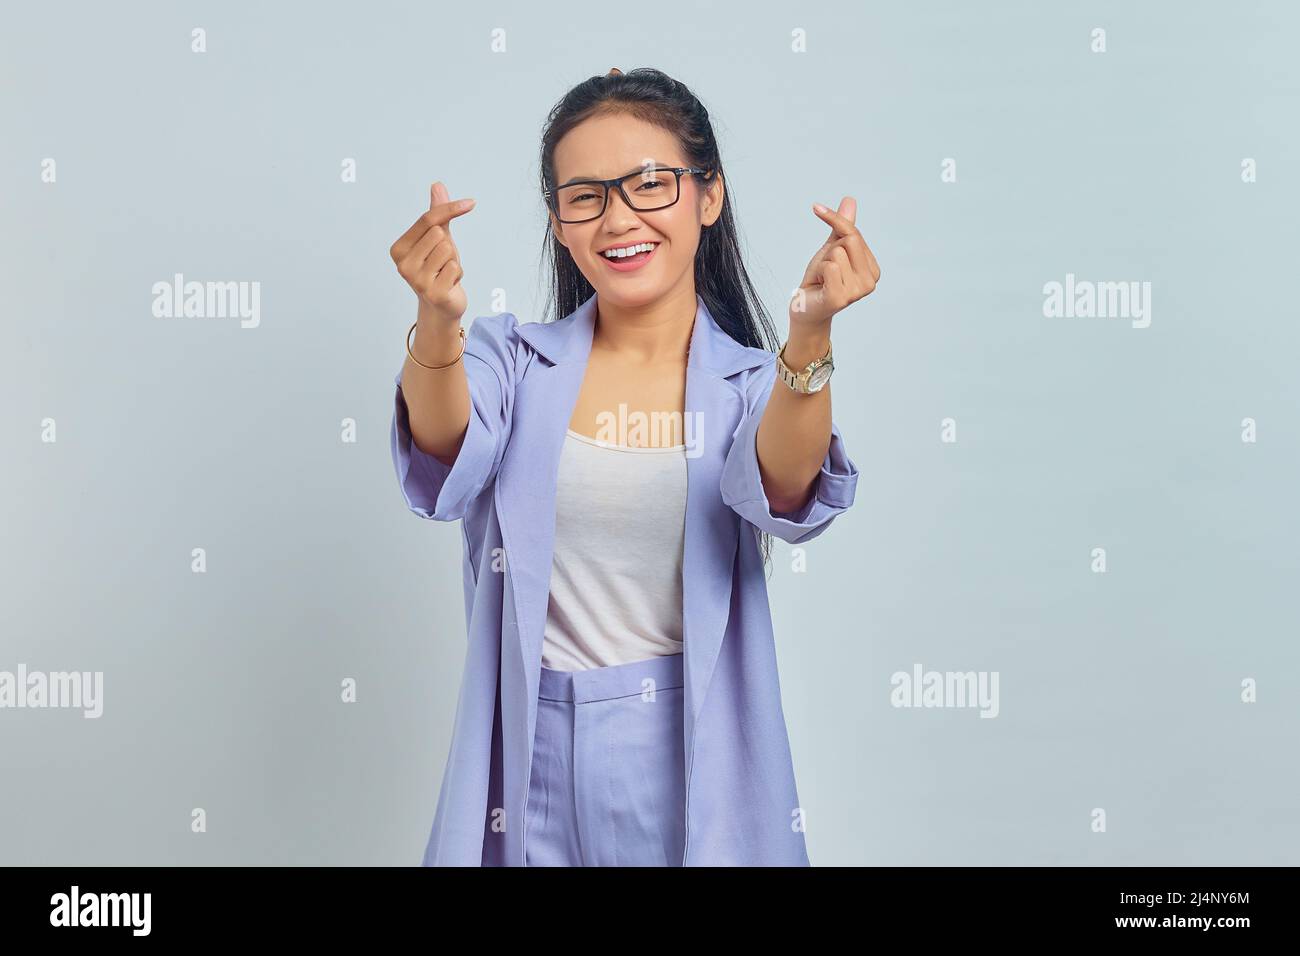 Portrait d'une jeune femme asiatique souriante montrant le cœur coréen avec deux doigts croisés, exprimer la joie et la positivité isolées sur fond blanc Banque D'Images